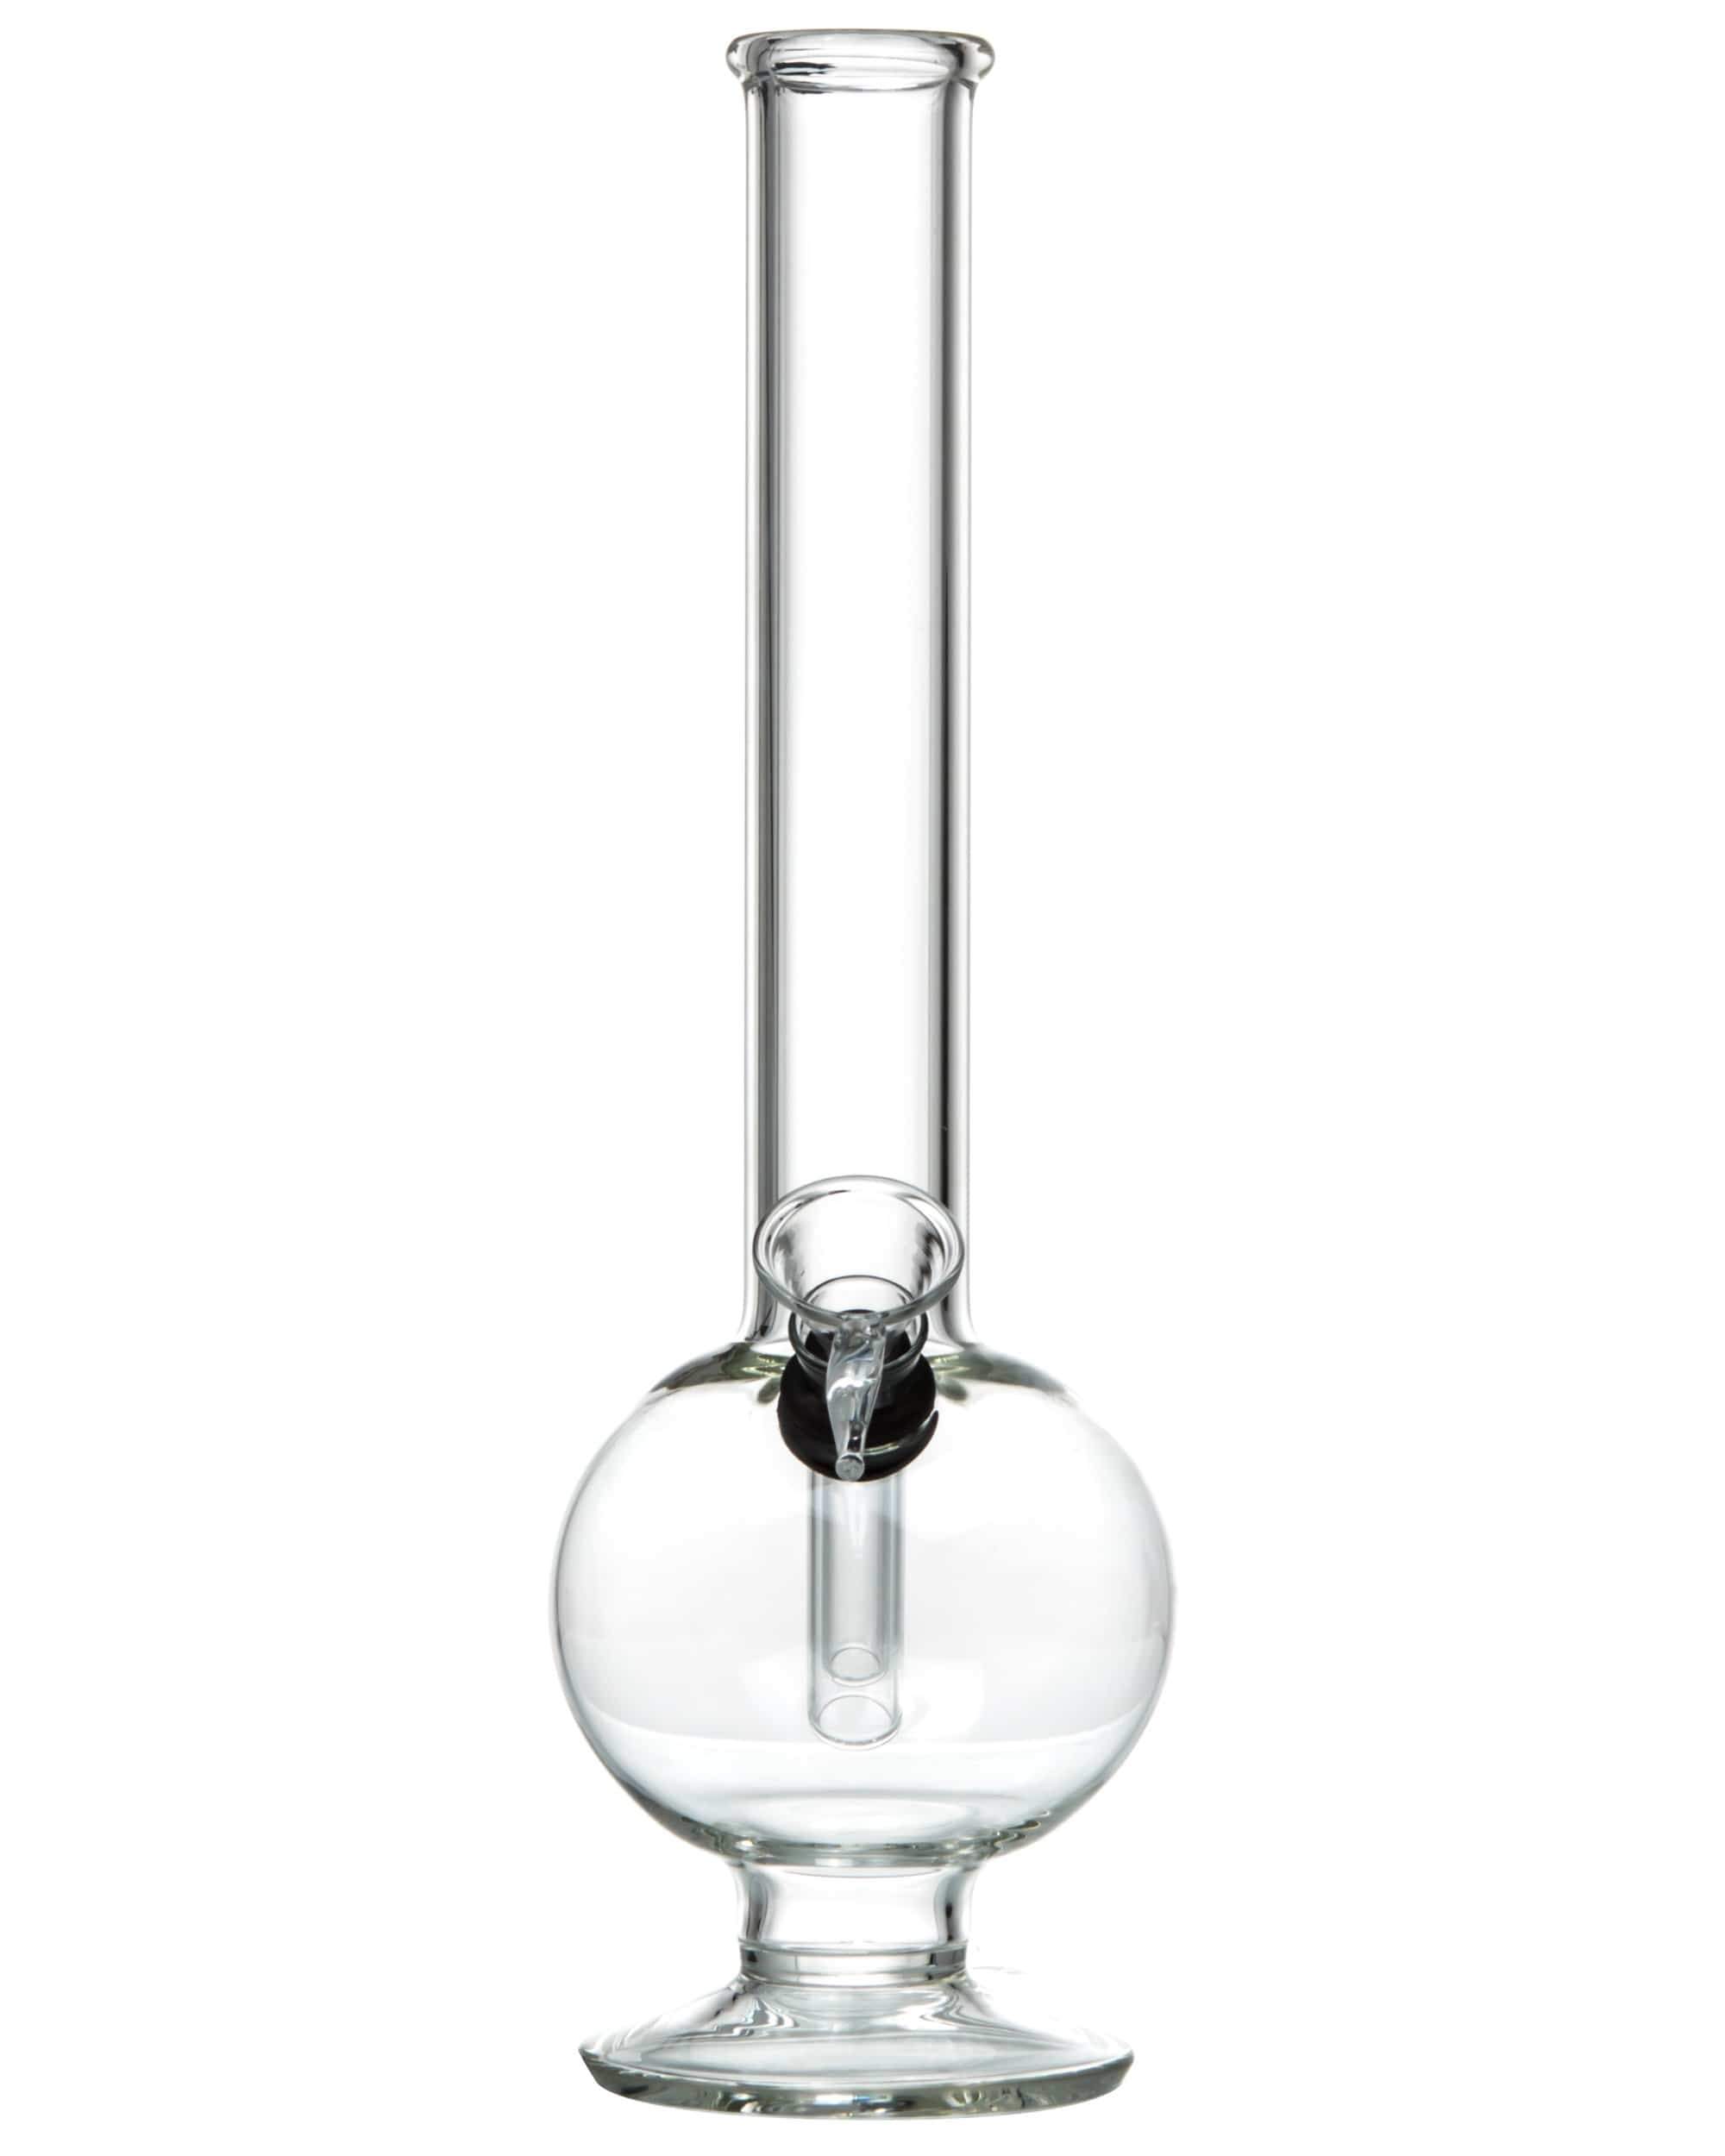 DankStop Default 11" Glass Bubble Bong w/ Rubber Grommet